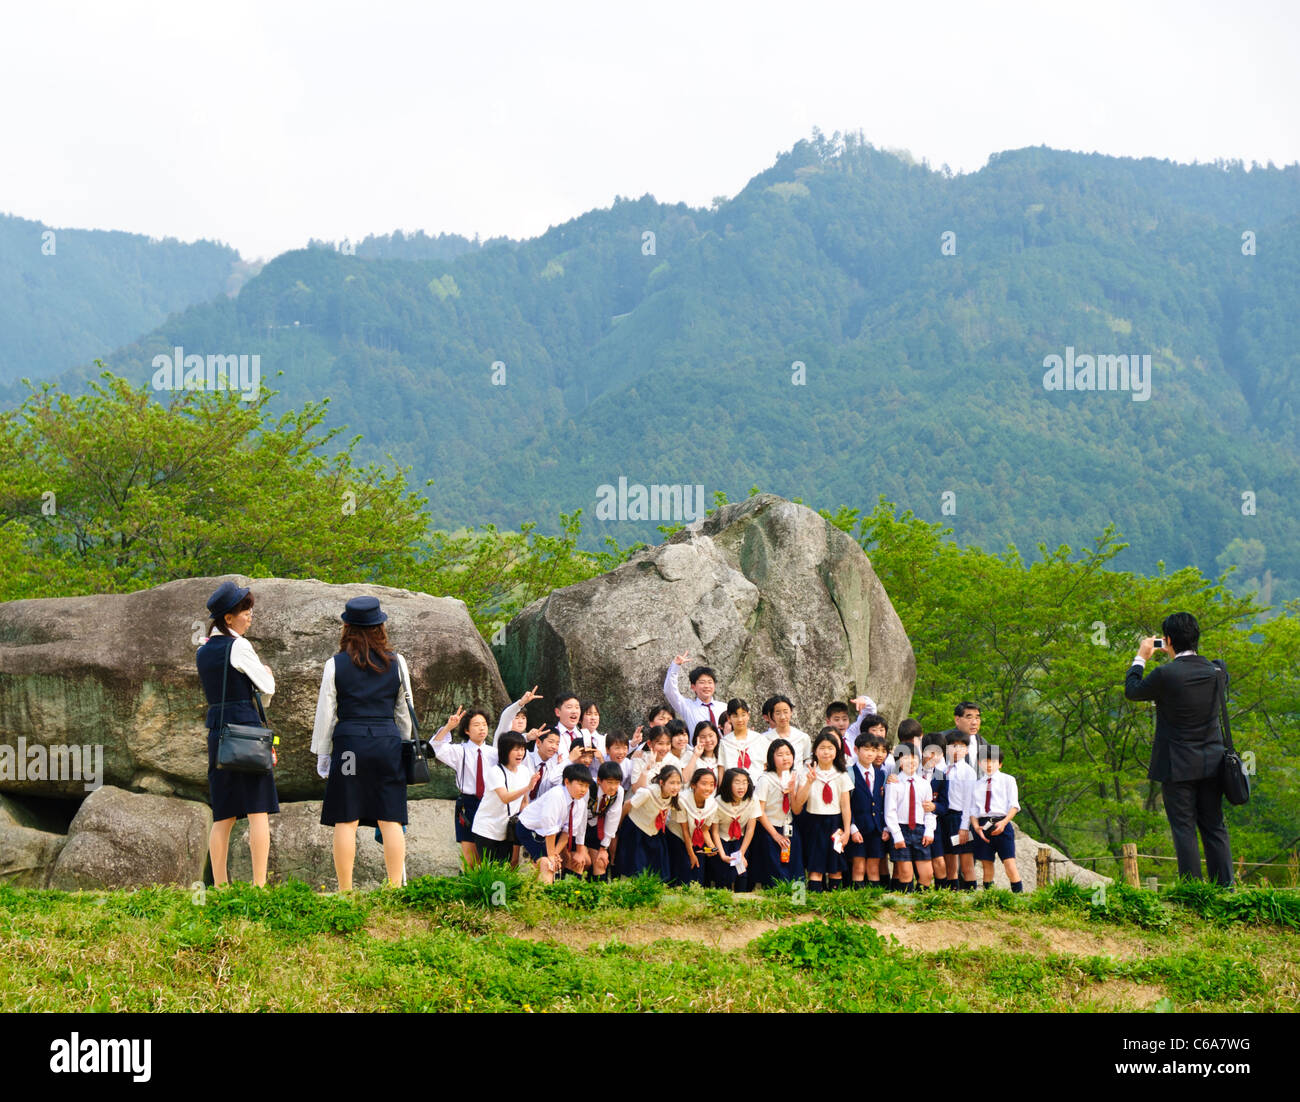 Asiatico i bambini della scuola hanno le loro foto scattata davanti i resti di una antica sepoltura camera o kofun Foto Stock